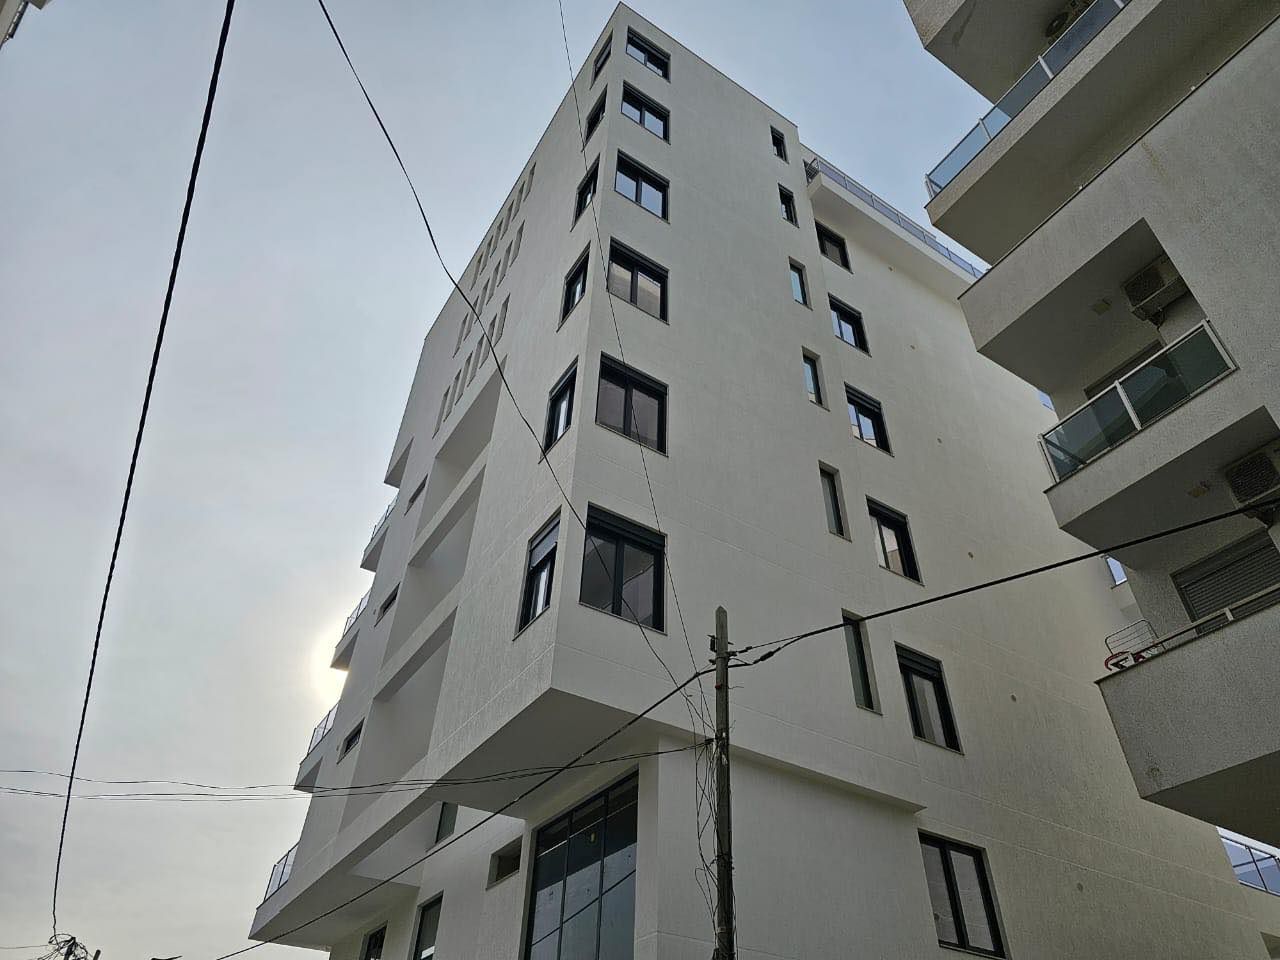 Grazioso Appartamento Con Vista Mare Con Mobili Nuovi Di Zecca In Vendita A Saranda In Albania A Soli 5 Minuti Dalla Spiaggia A Dal Lungomare.